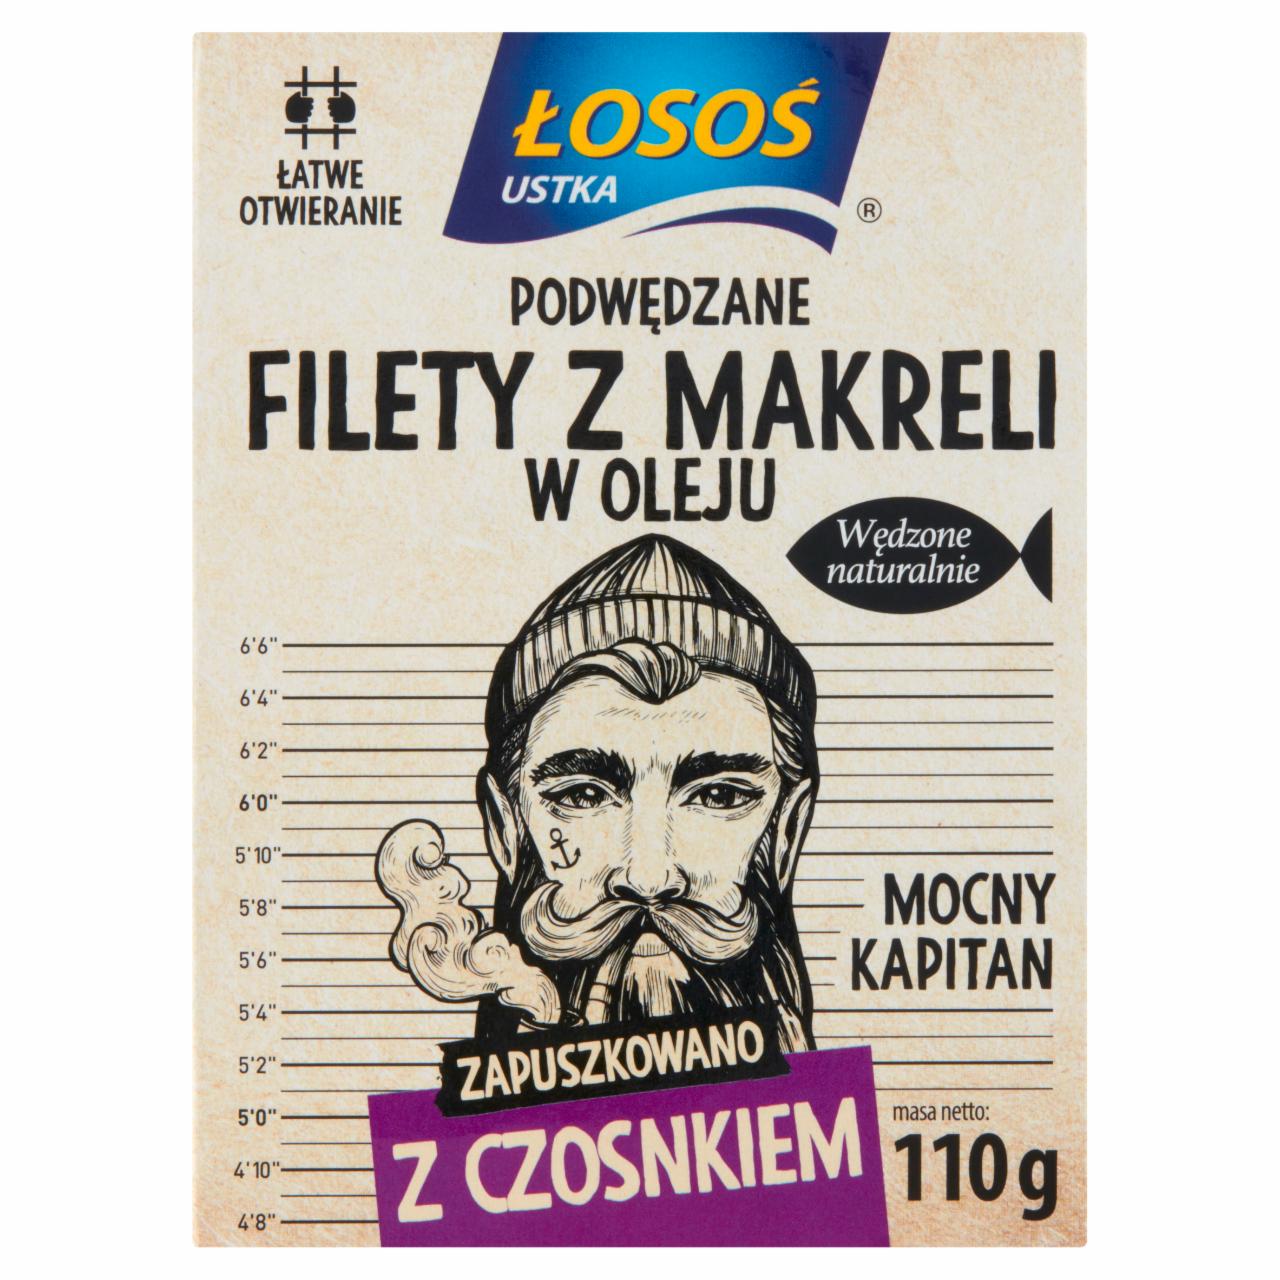 Zdjęcia - Łosoś Ustka Podwędzane filety z makreli w oleju z czosnkiem 110 g